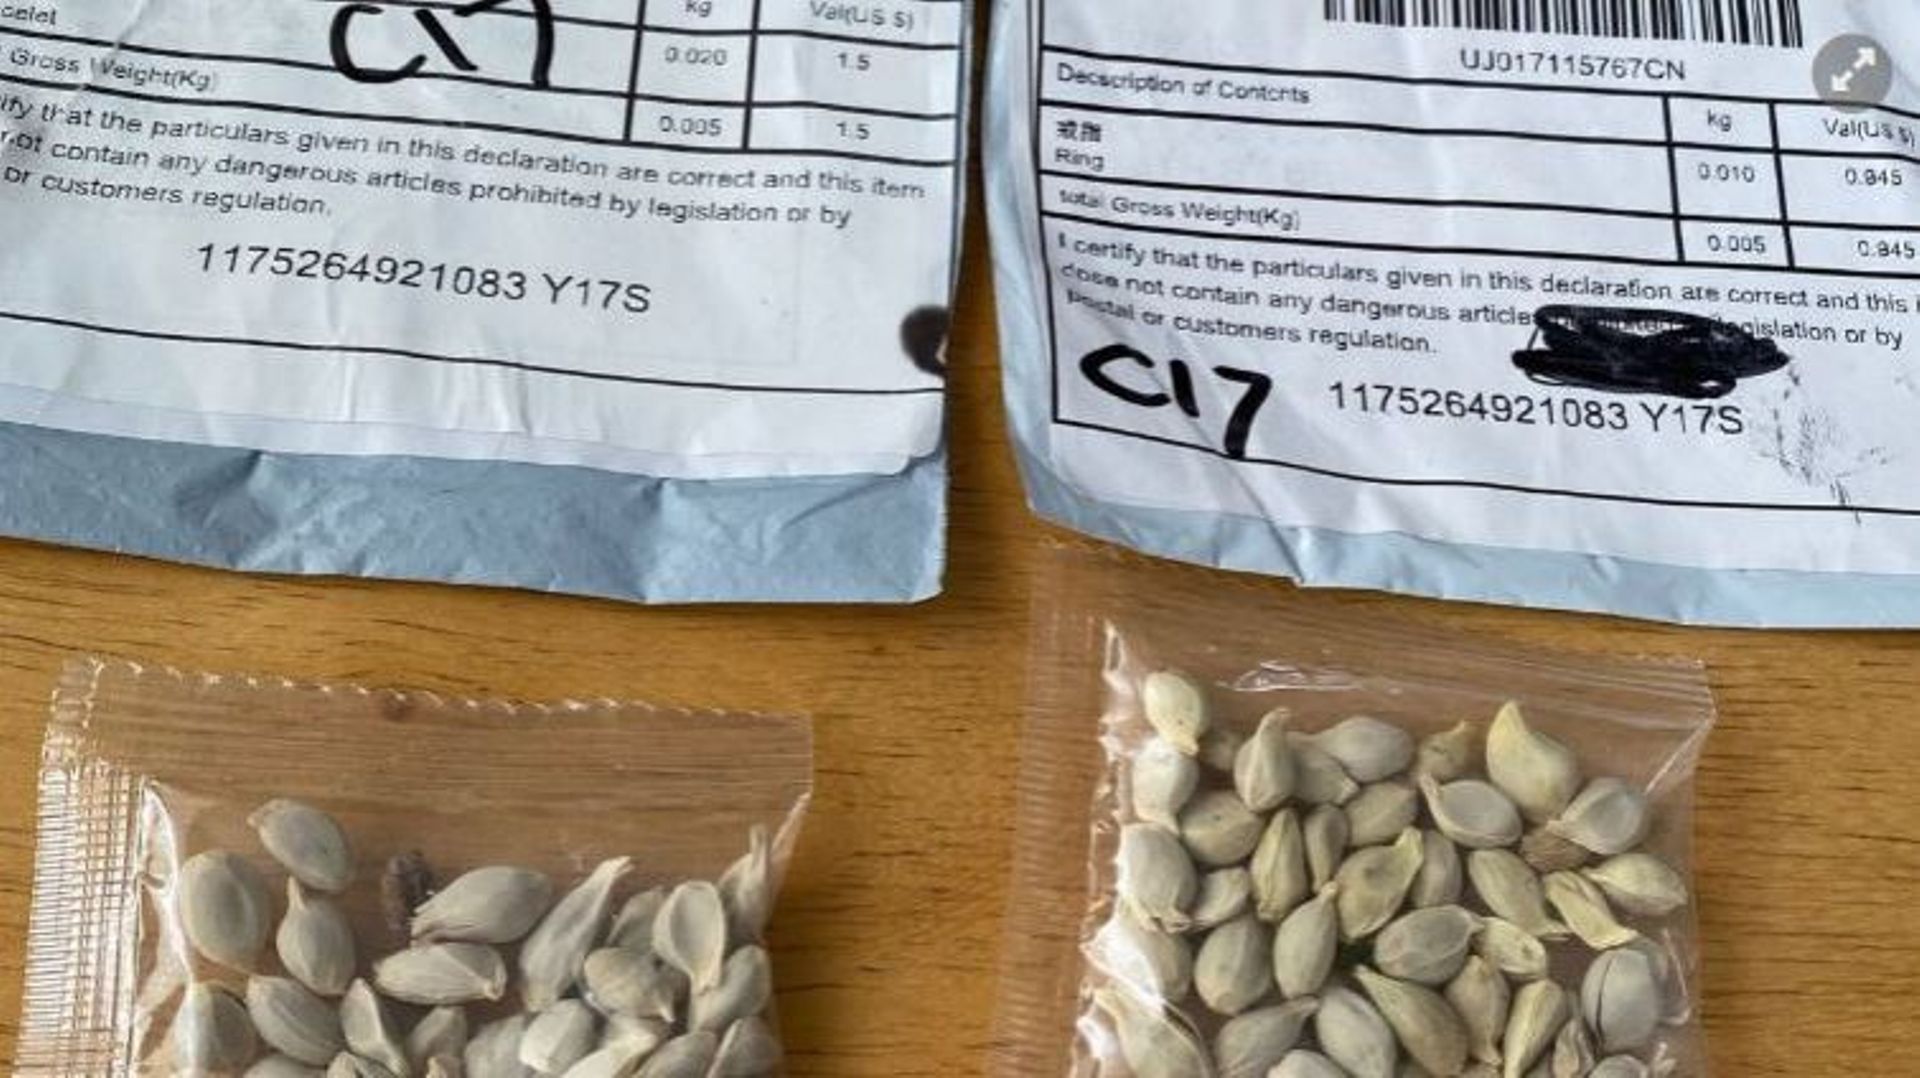 Une habitante de Manage a reçu des graines en provenance de Chine : l’Afsca recommande la prudence